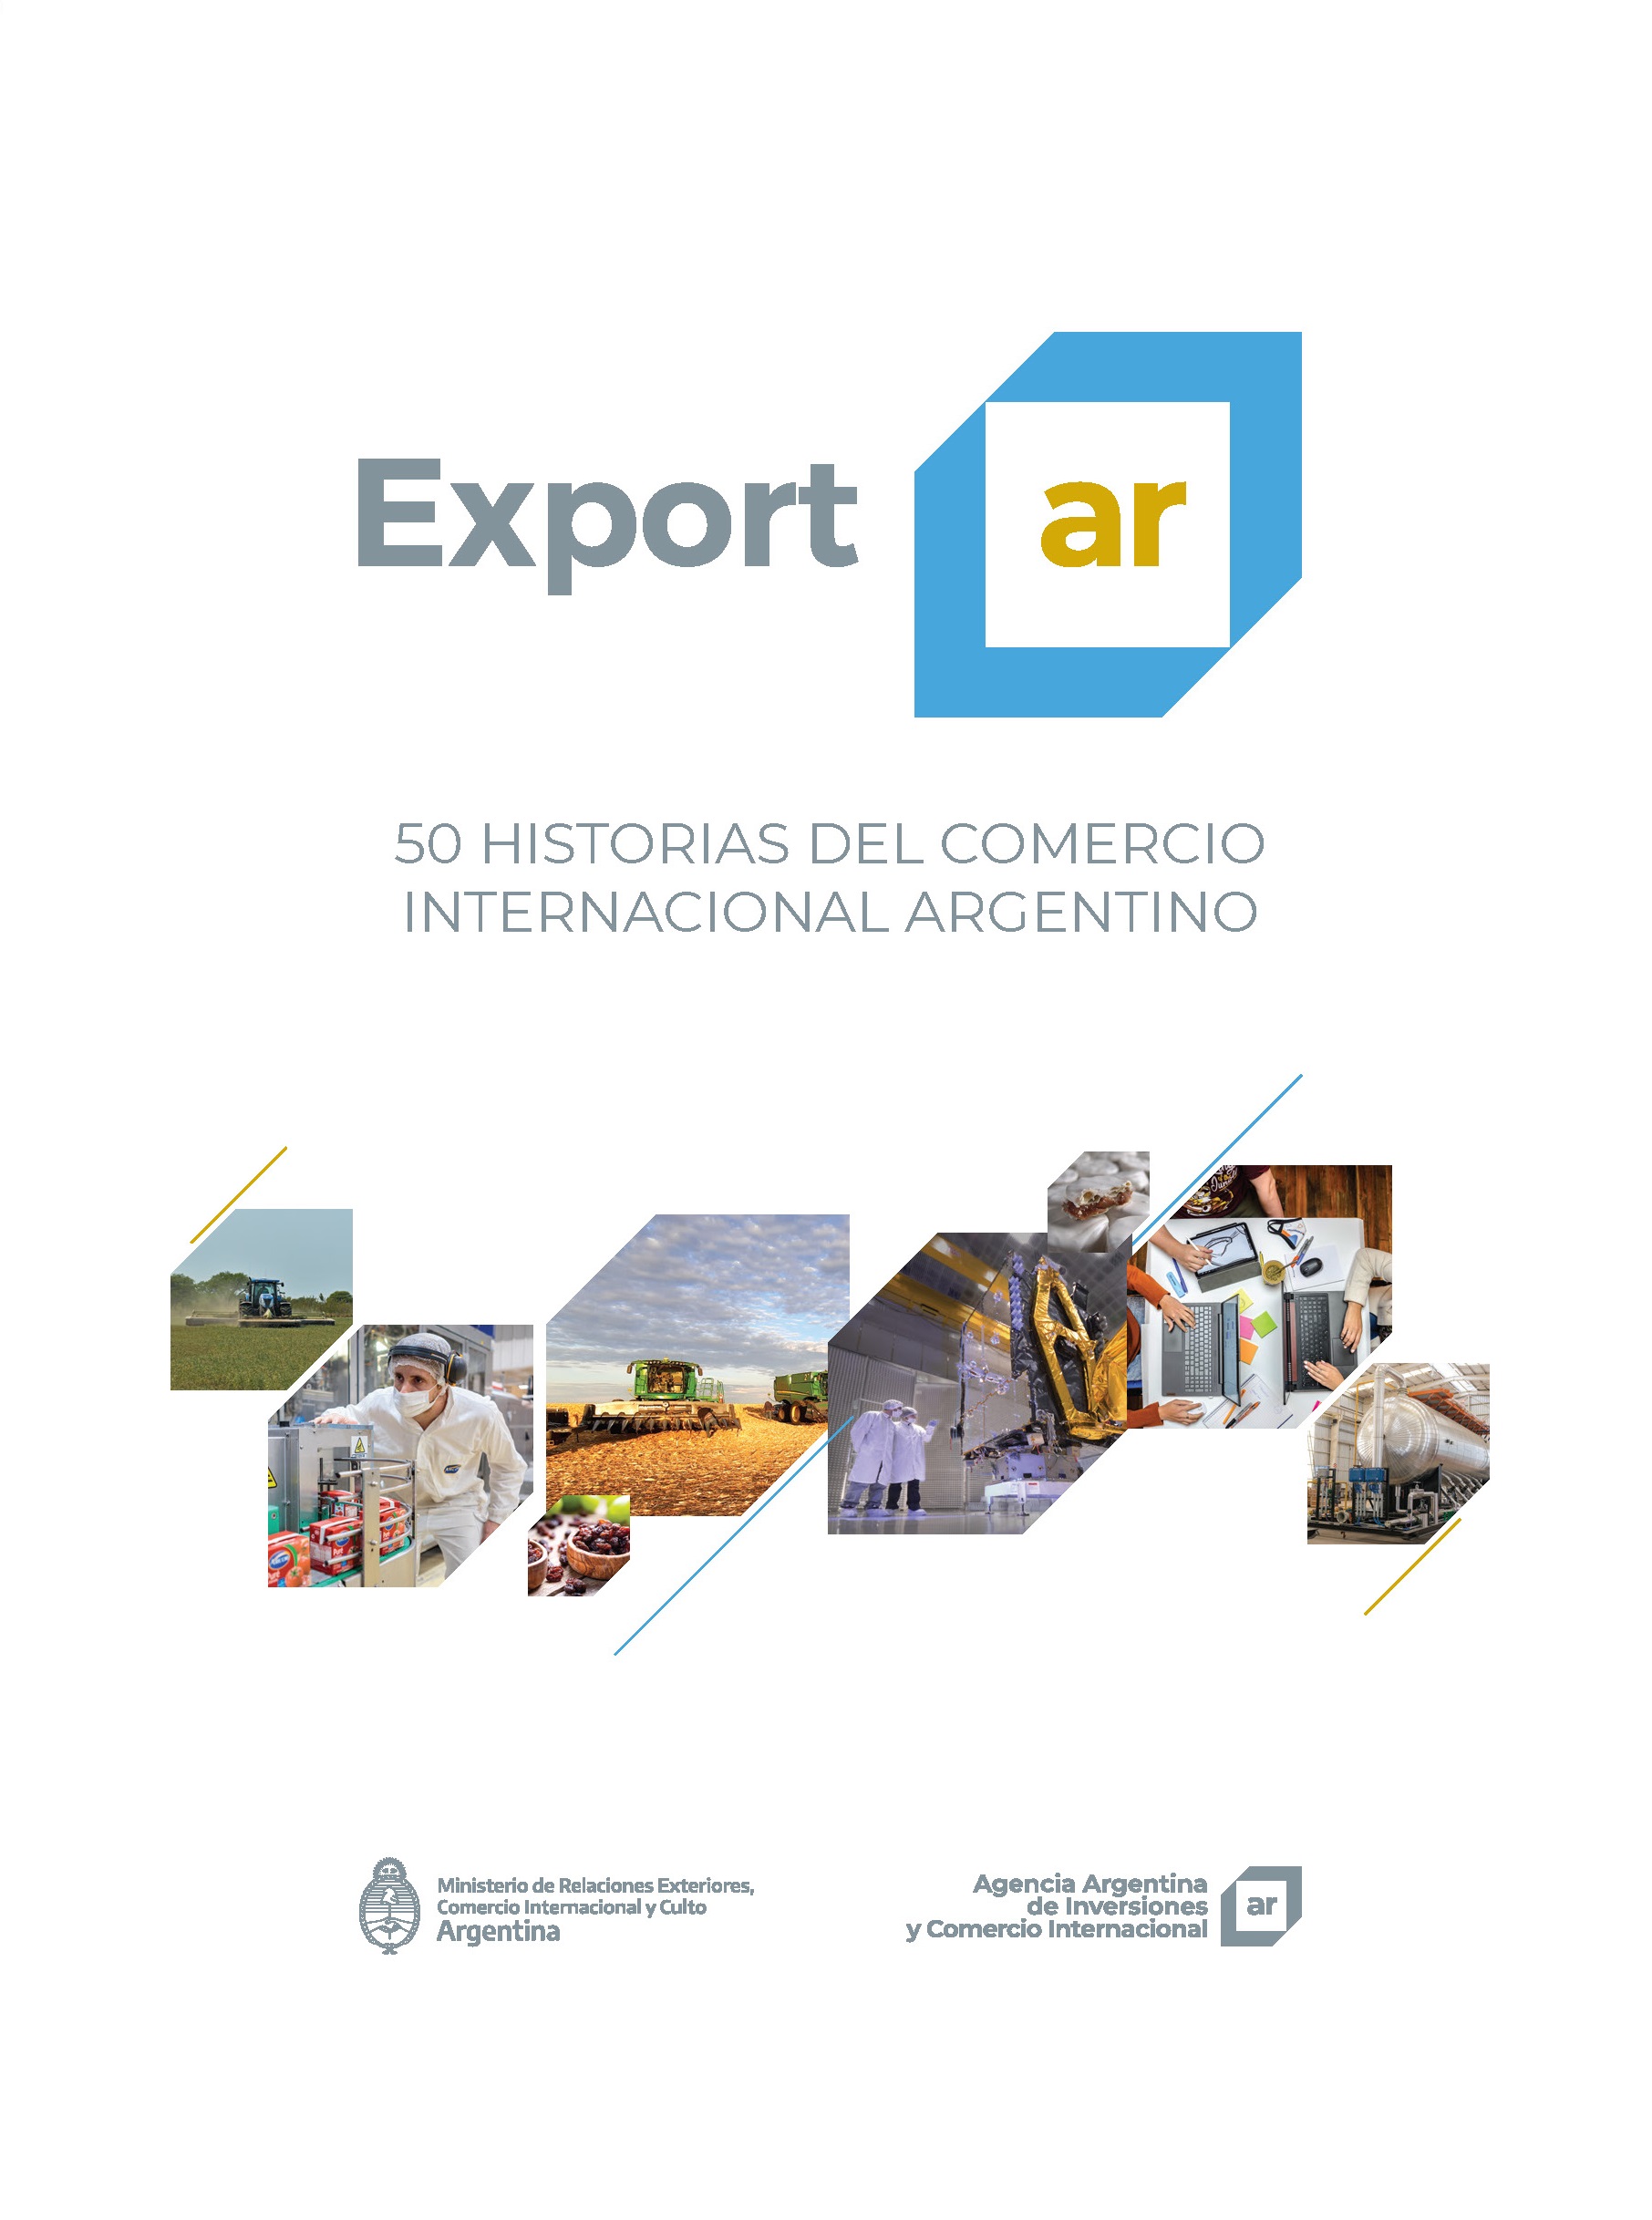 https://www.inversionycomercio.ar/images/publicaciones/Exportar. 50 historias del comercio internacional argentino